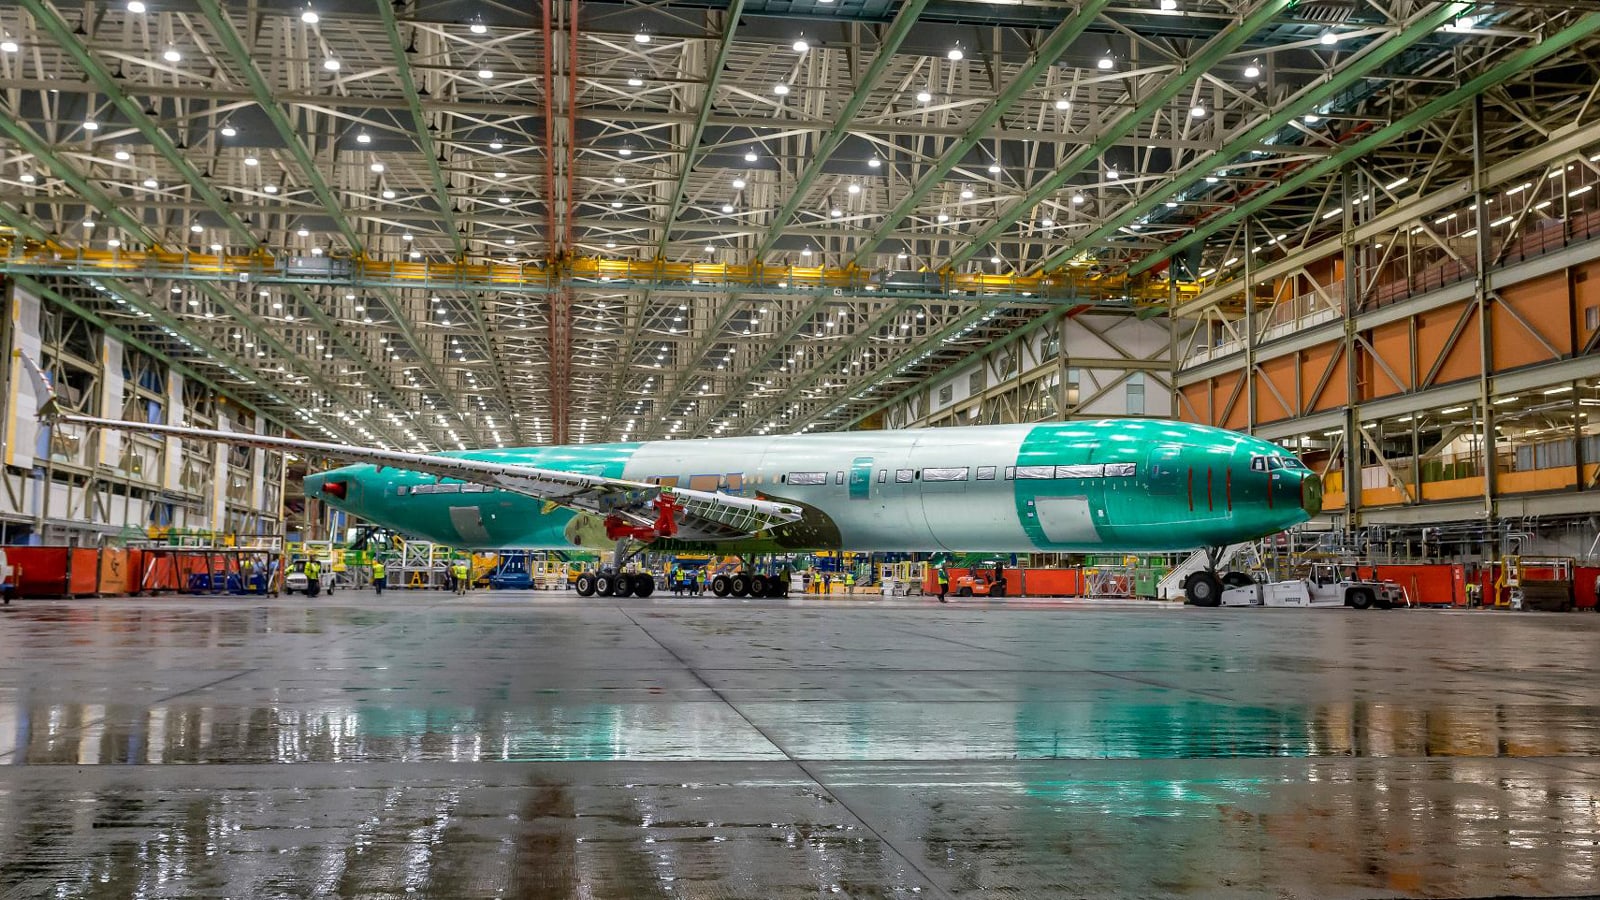 شركة "بوينغ" تقدم لمحةً لأكبر طائرة نفاثة ذات محركين في العالم